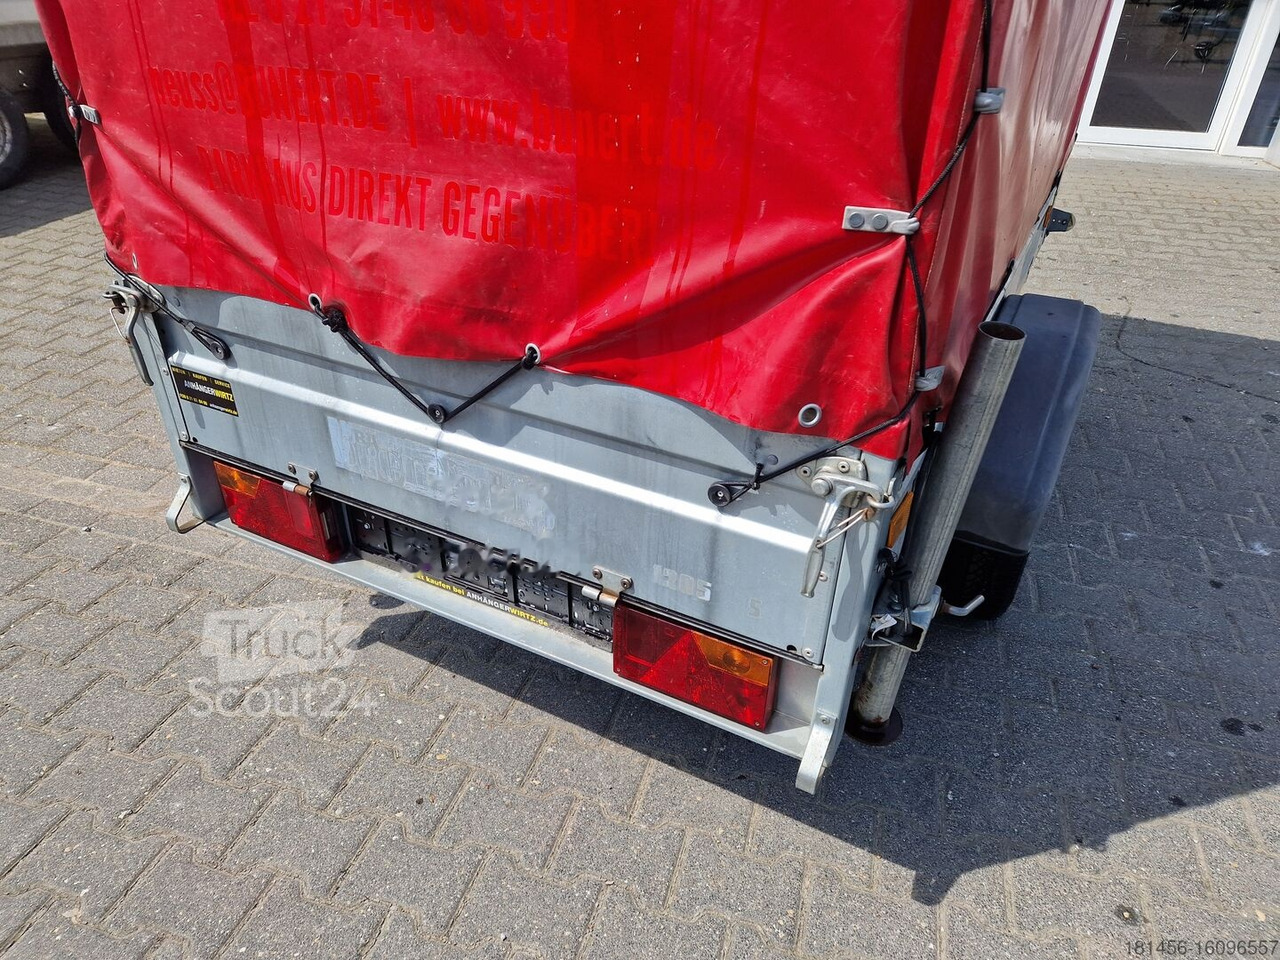 Biltrailer Brenderup Anhänger 750kg mit Hochplane gebraucht: billede 9